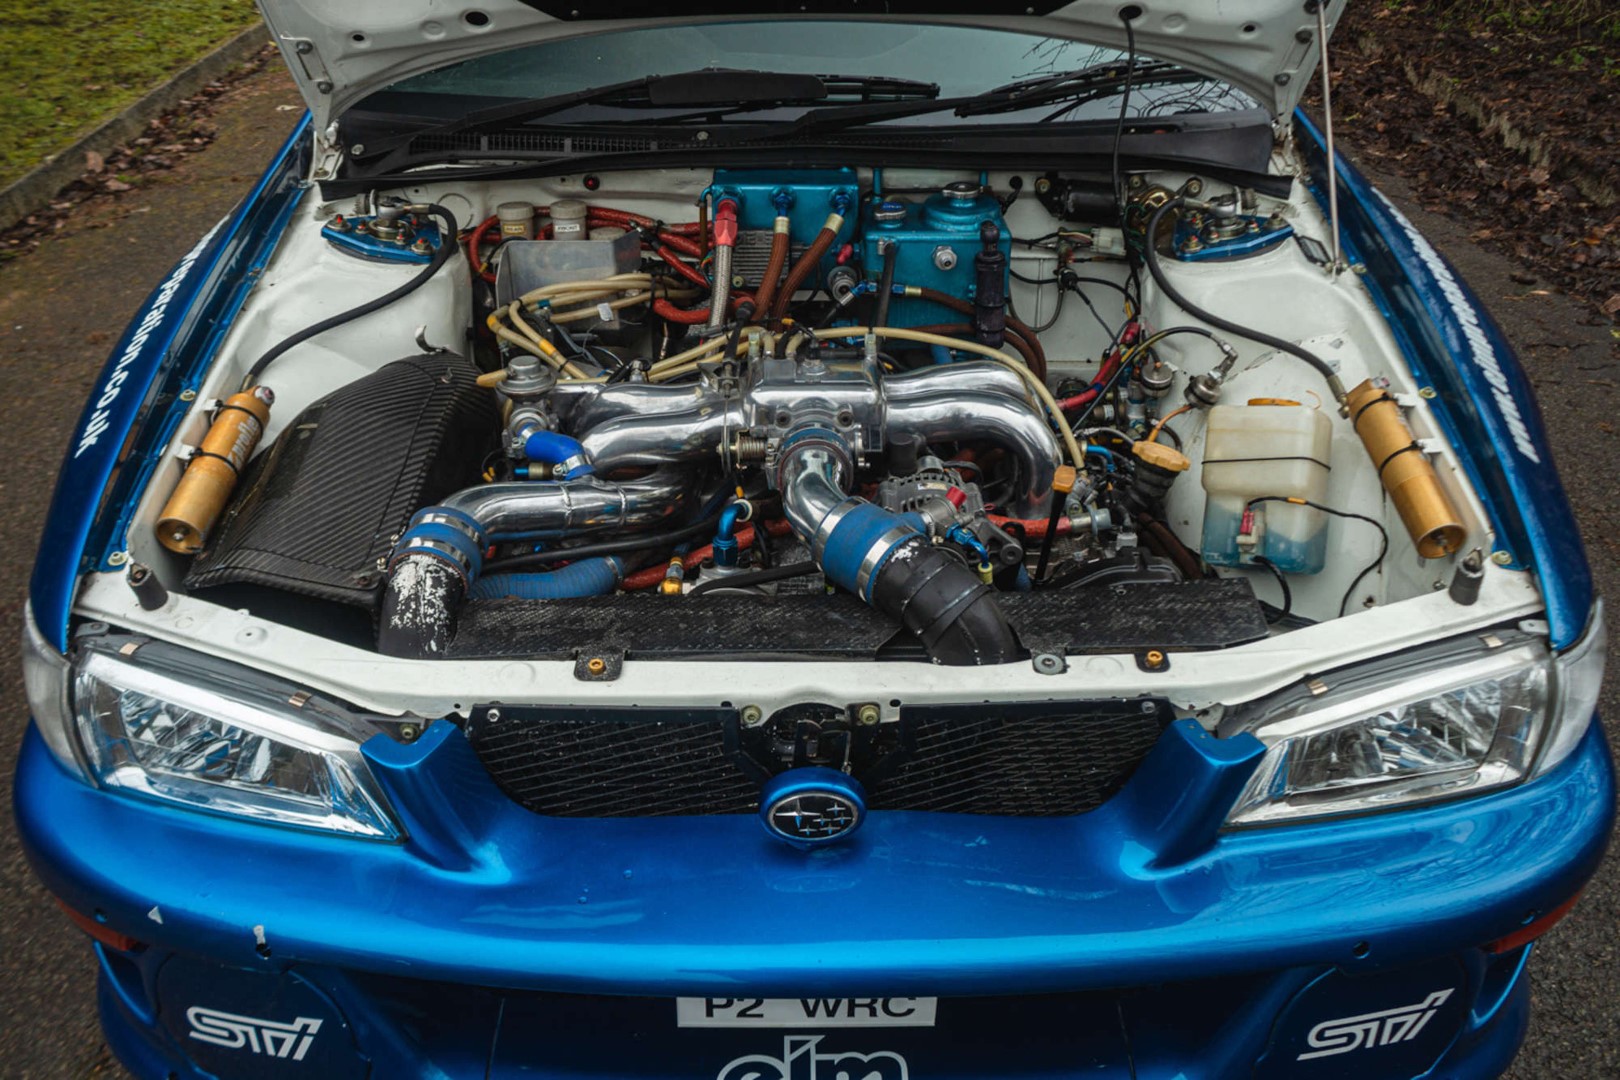 Subaru Impreza P2 WRC engine